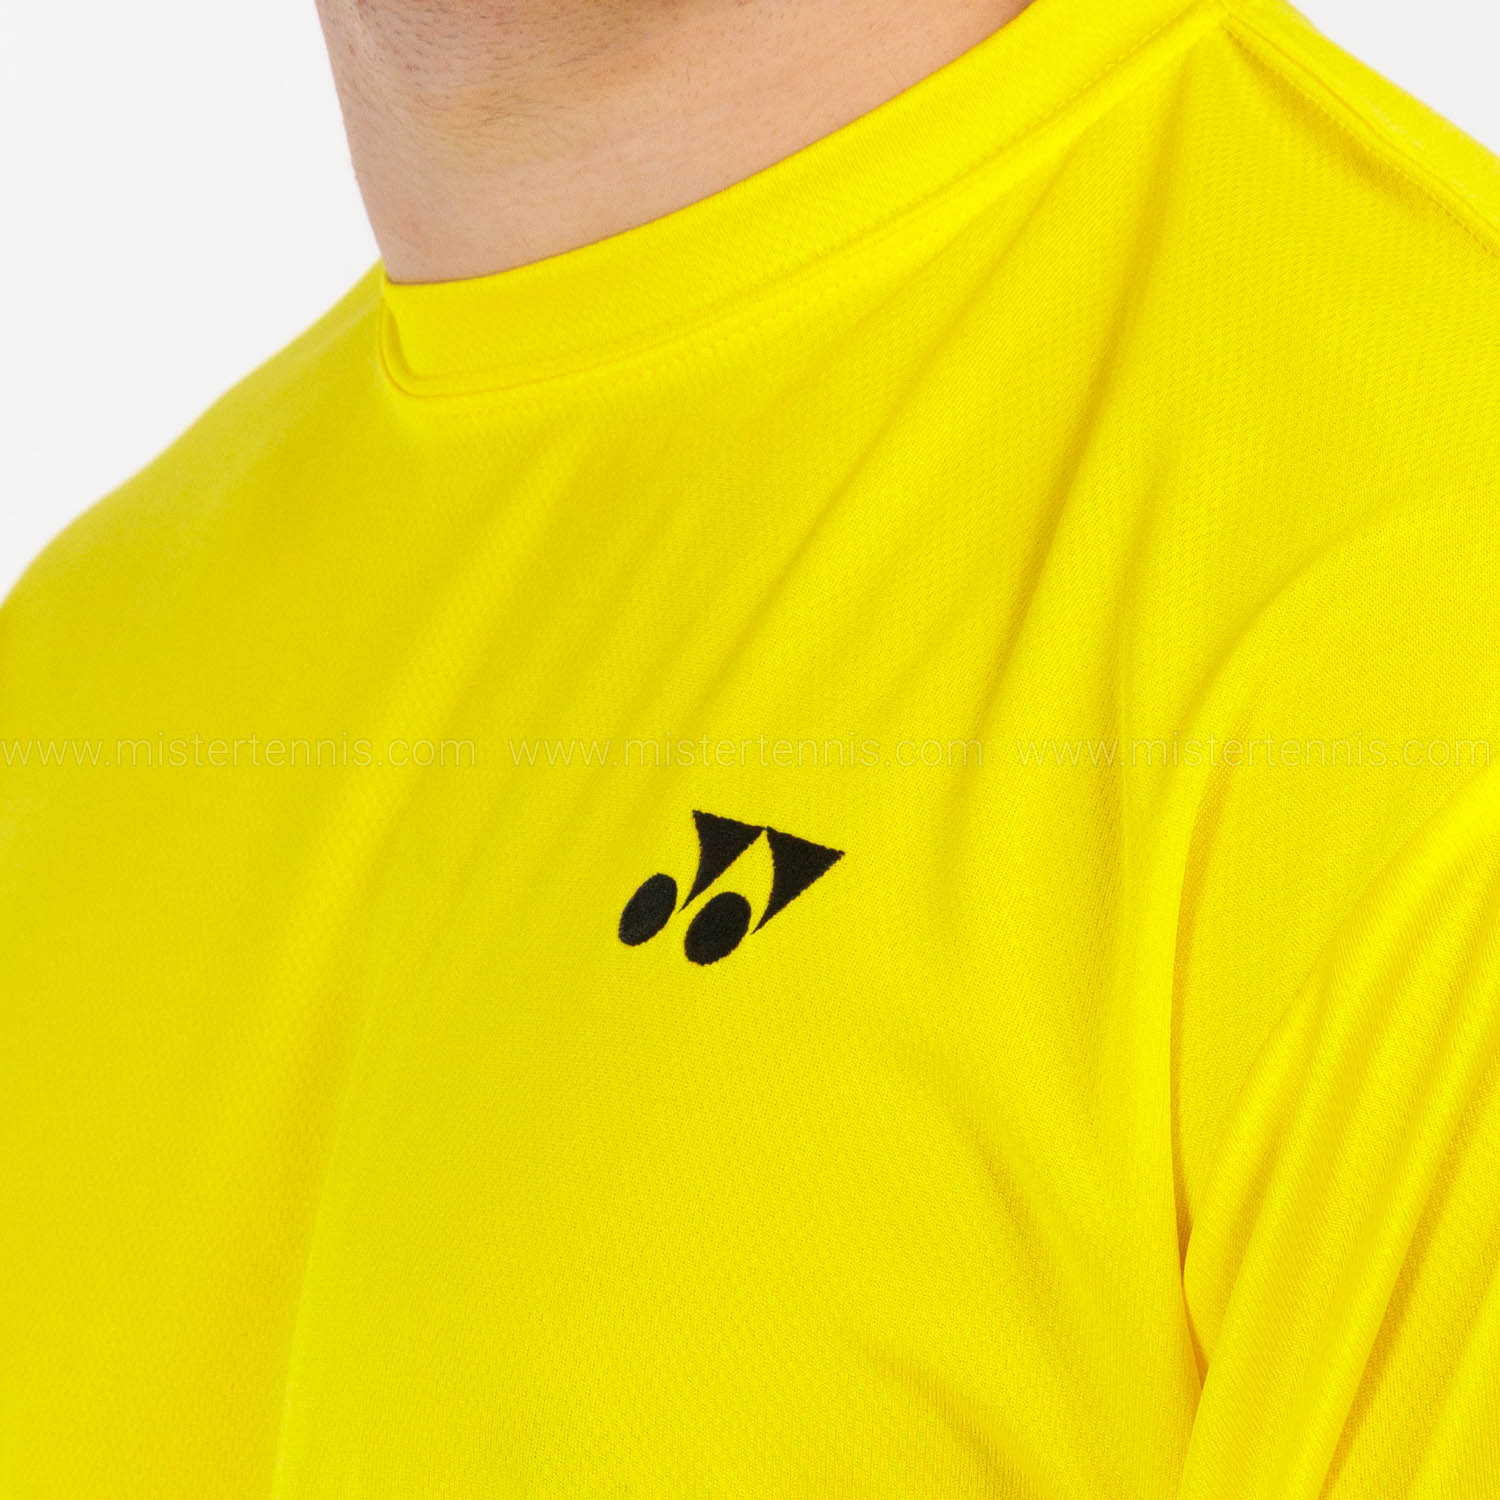 Yonex Club T-Shirt - Light Yellow